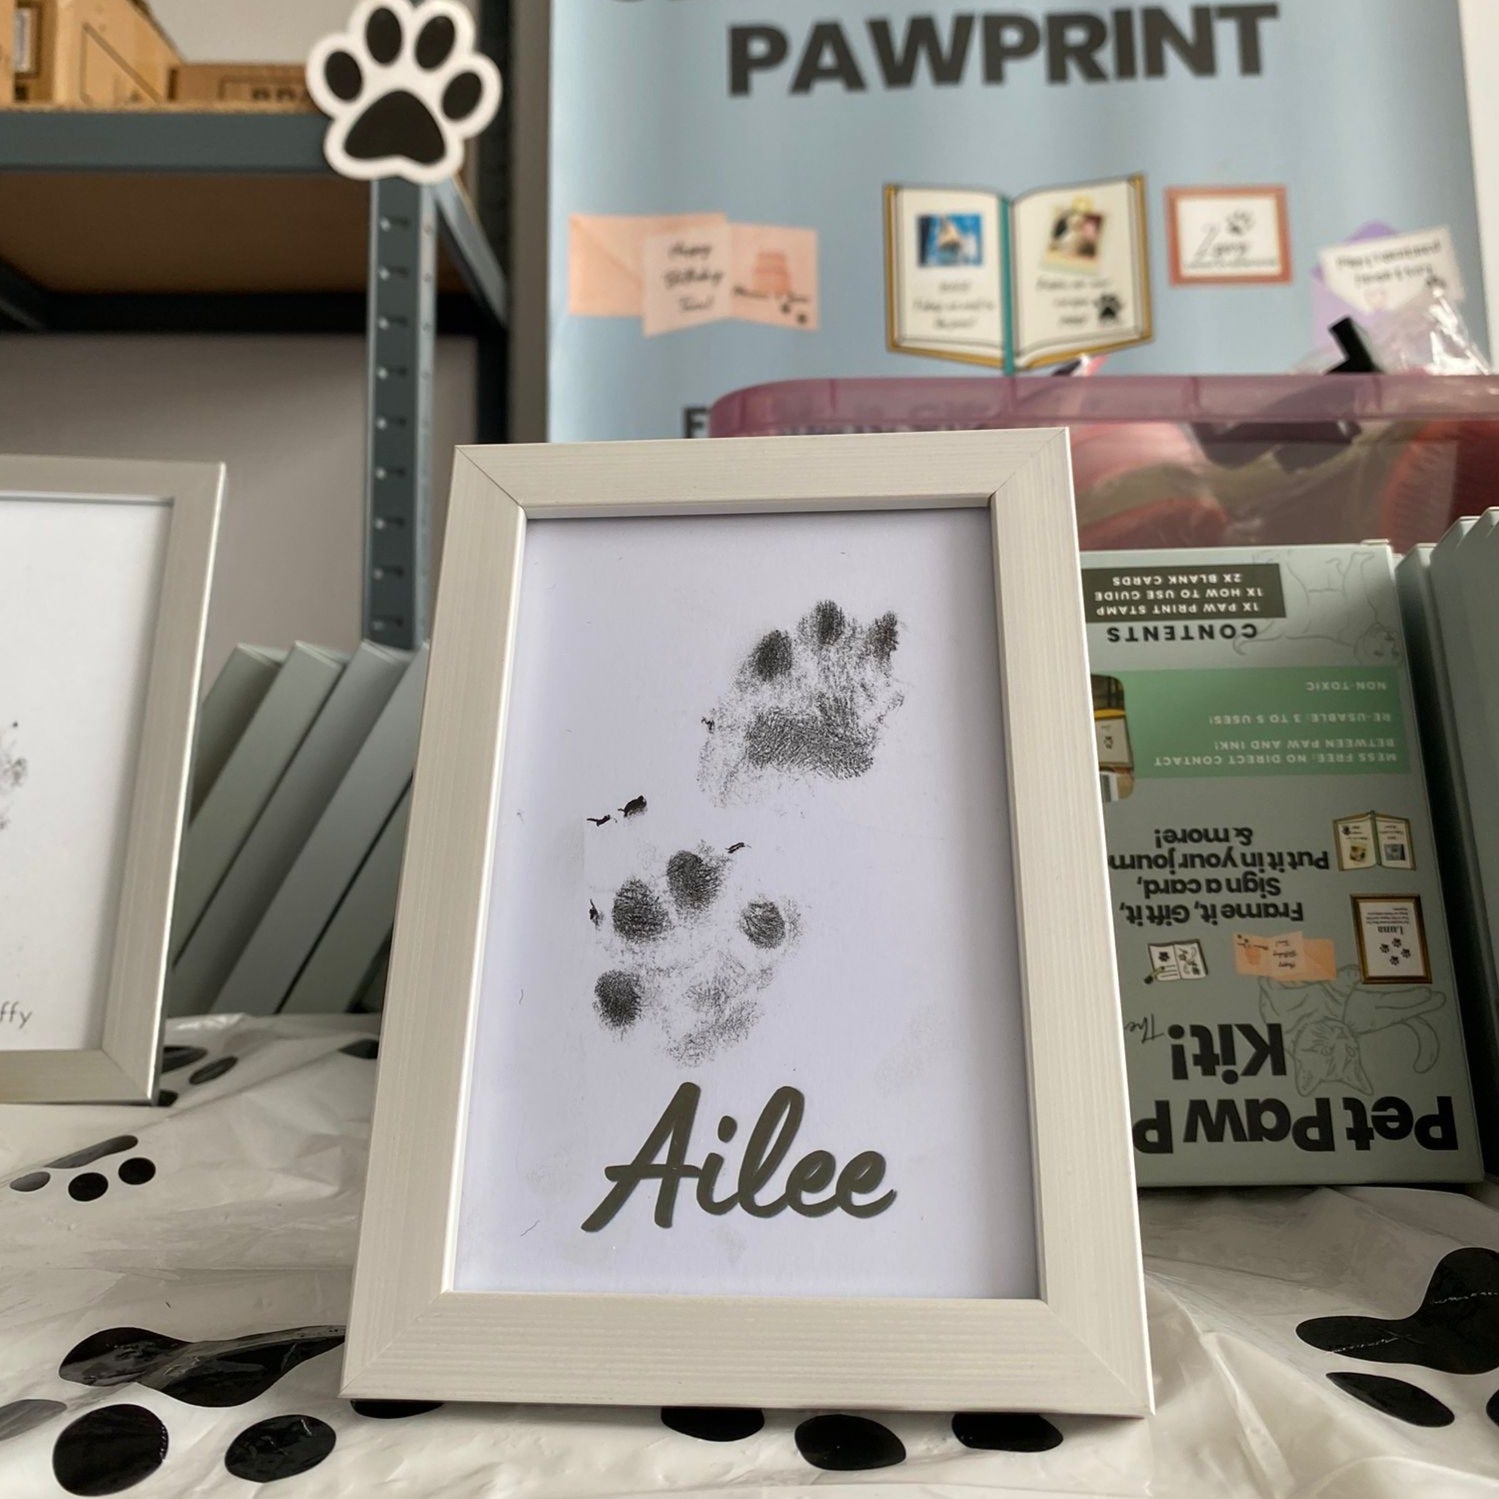 Pet Paw Print Ink Kit, Dog Paw Print Kit